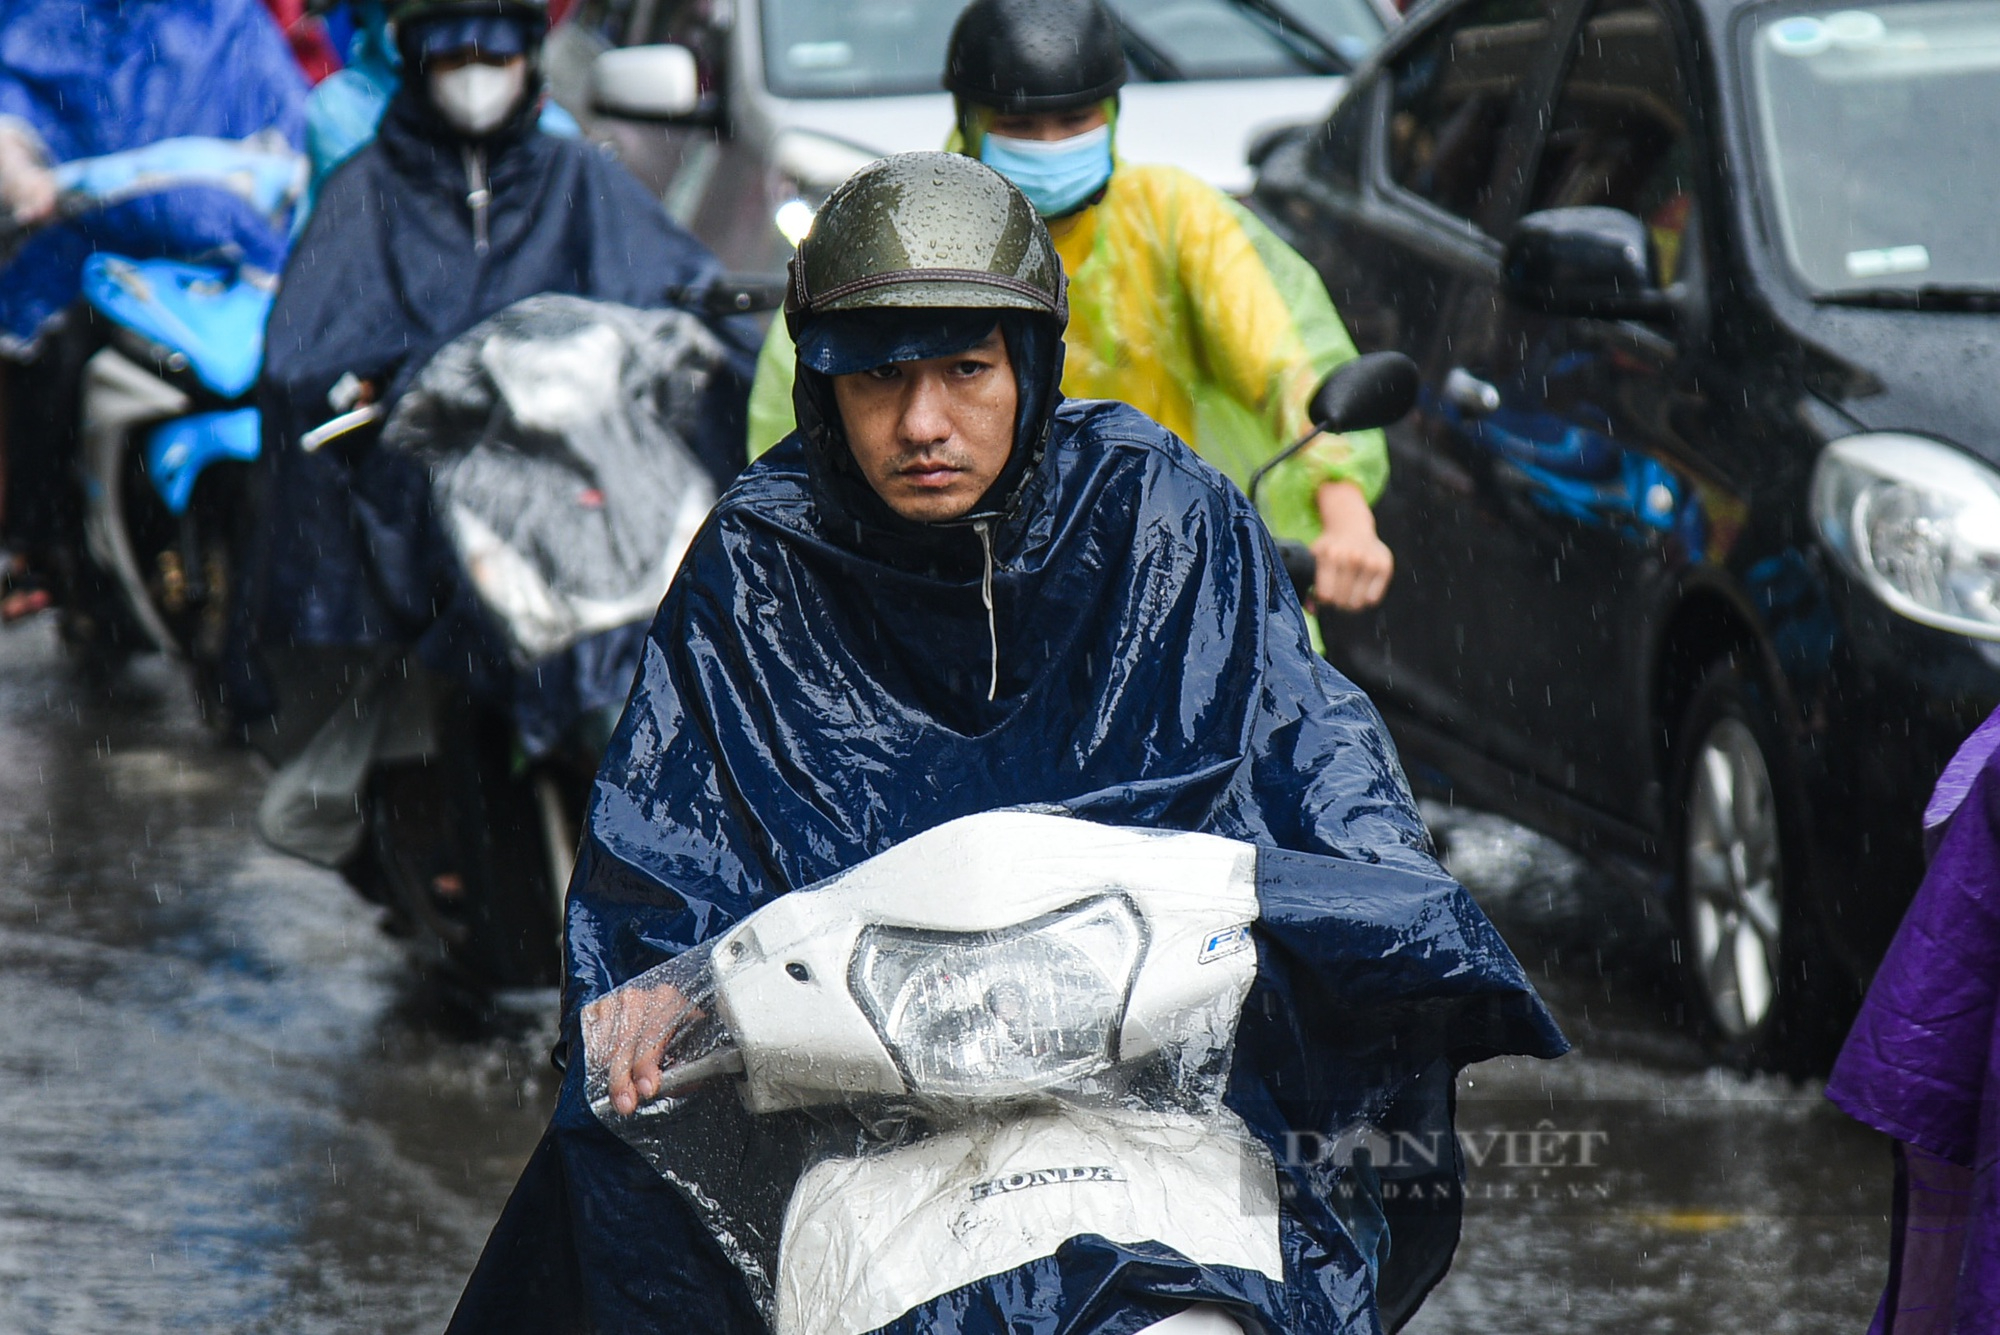 Đường phố Hà Nội tắc 'không lối thoát' sau cơn mưa tầm tã vào giờ cao điểm - Ảnh 5.